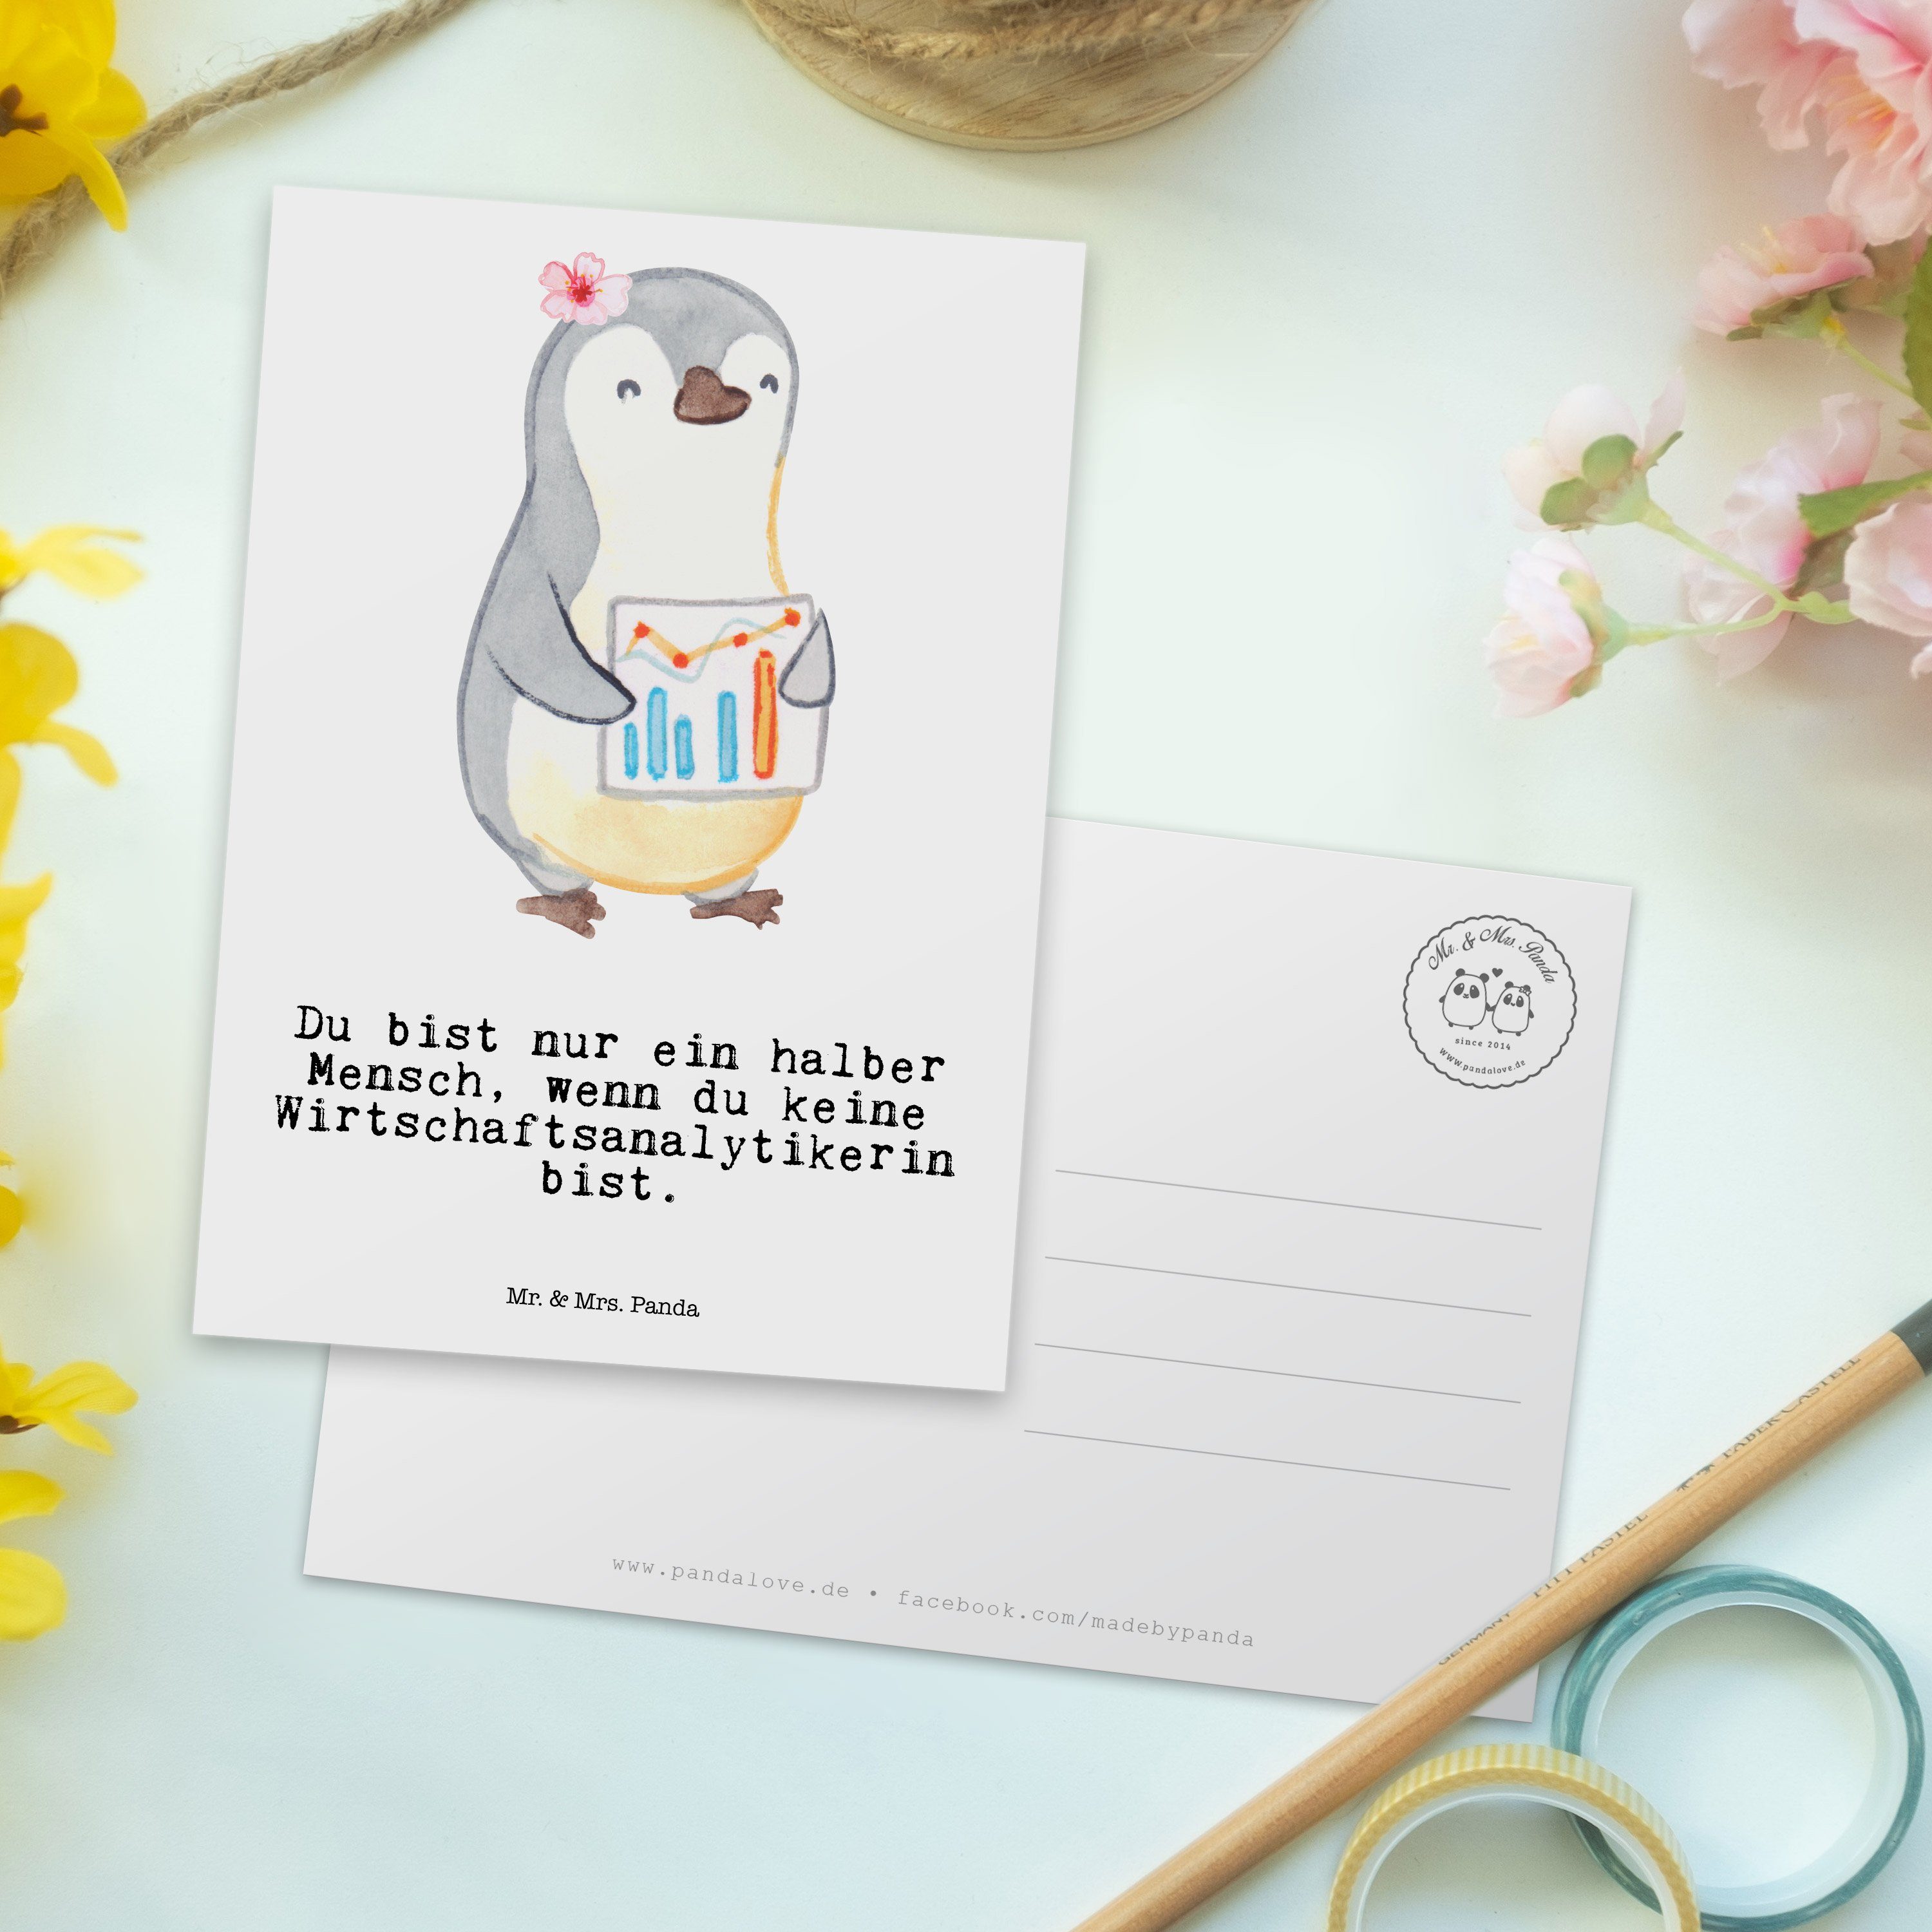 Mrs. Postkarte - Mr. Weiß Einladungskarte & - mit Geschenk, Herz Panda Wirtschaftsanalytikerin